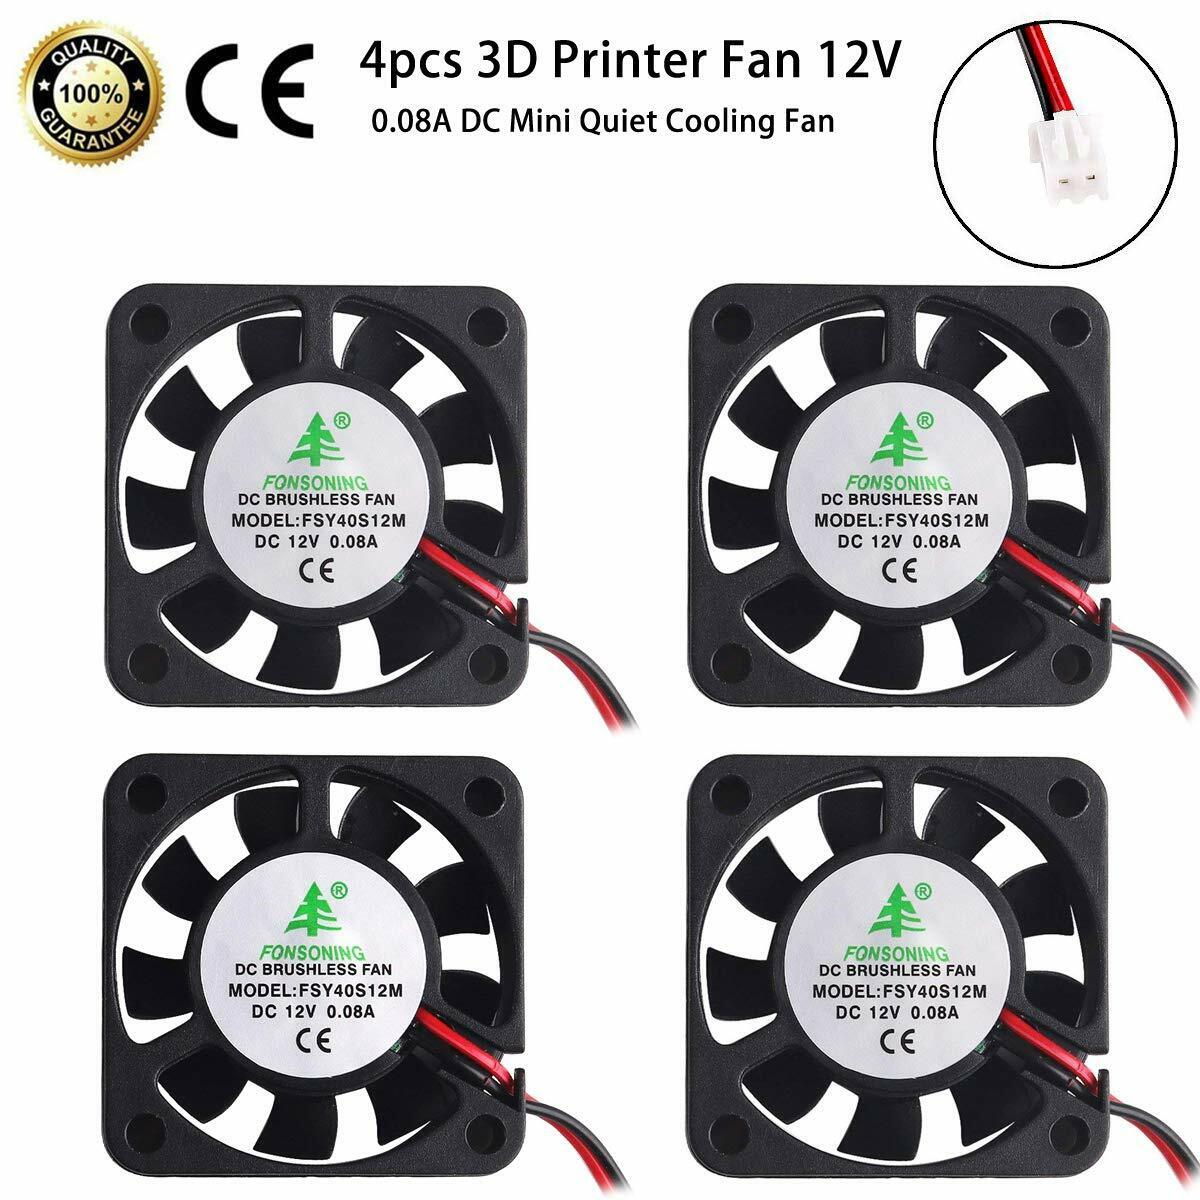 4 Pcs 3D Printer Fan 12V 0.08A DC Mini Quiet Cooling Fan 40X40mm with 28cm Cable